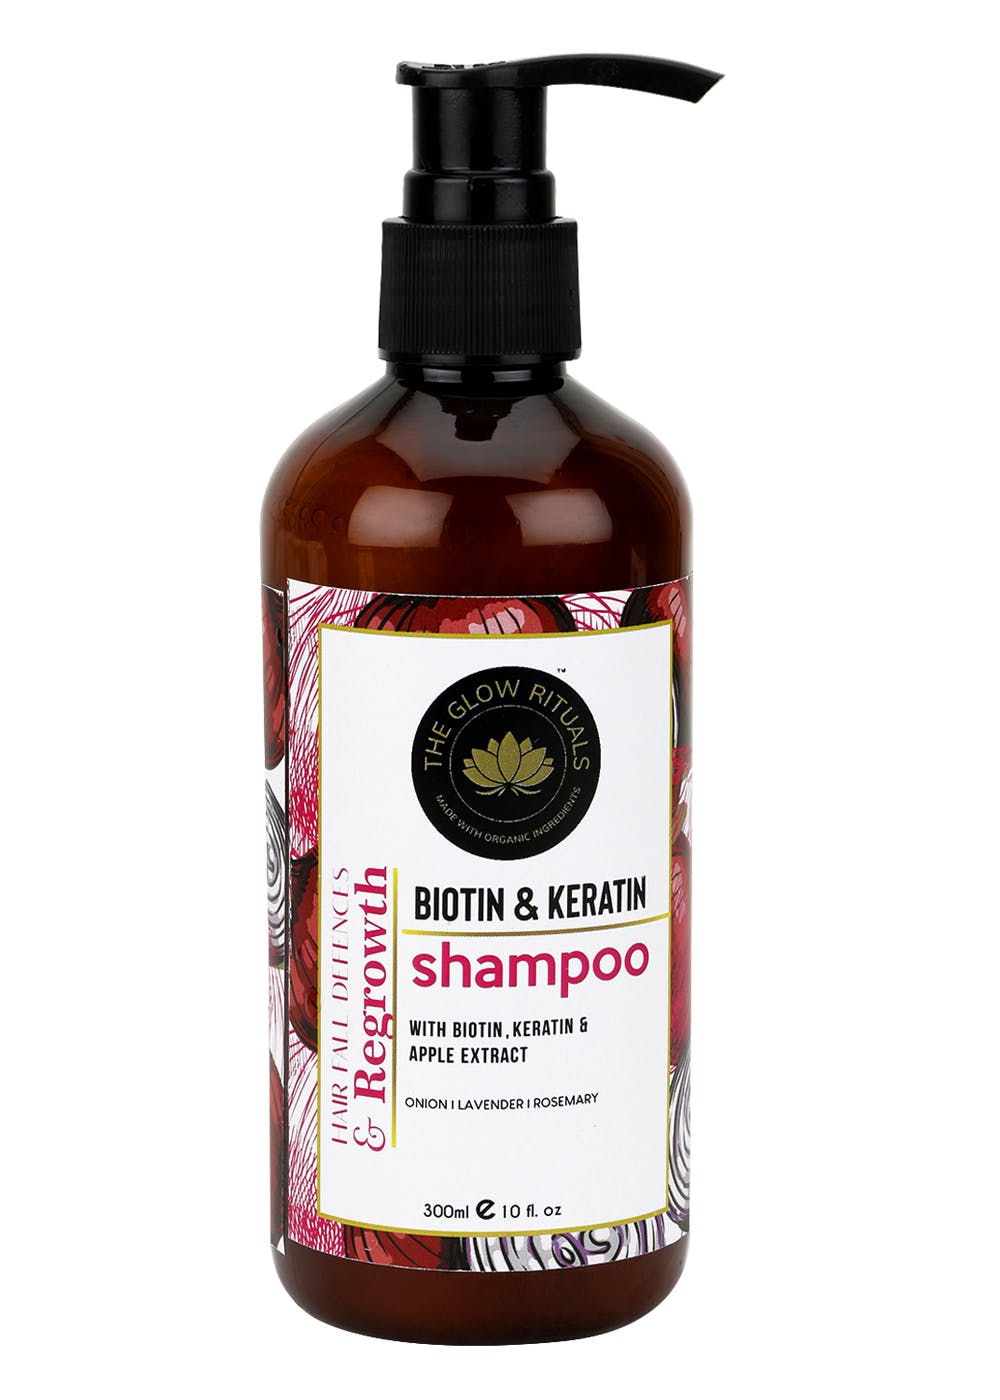 Biotin & Keratin Shampoo (300ml)